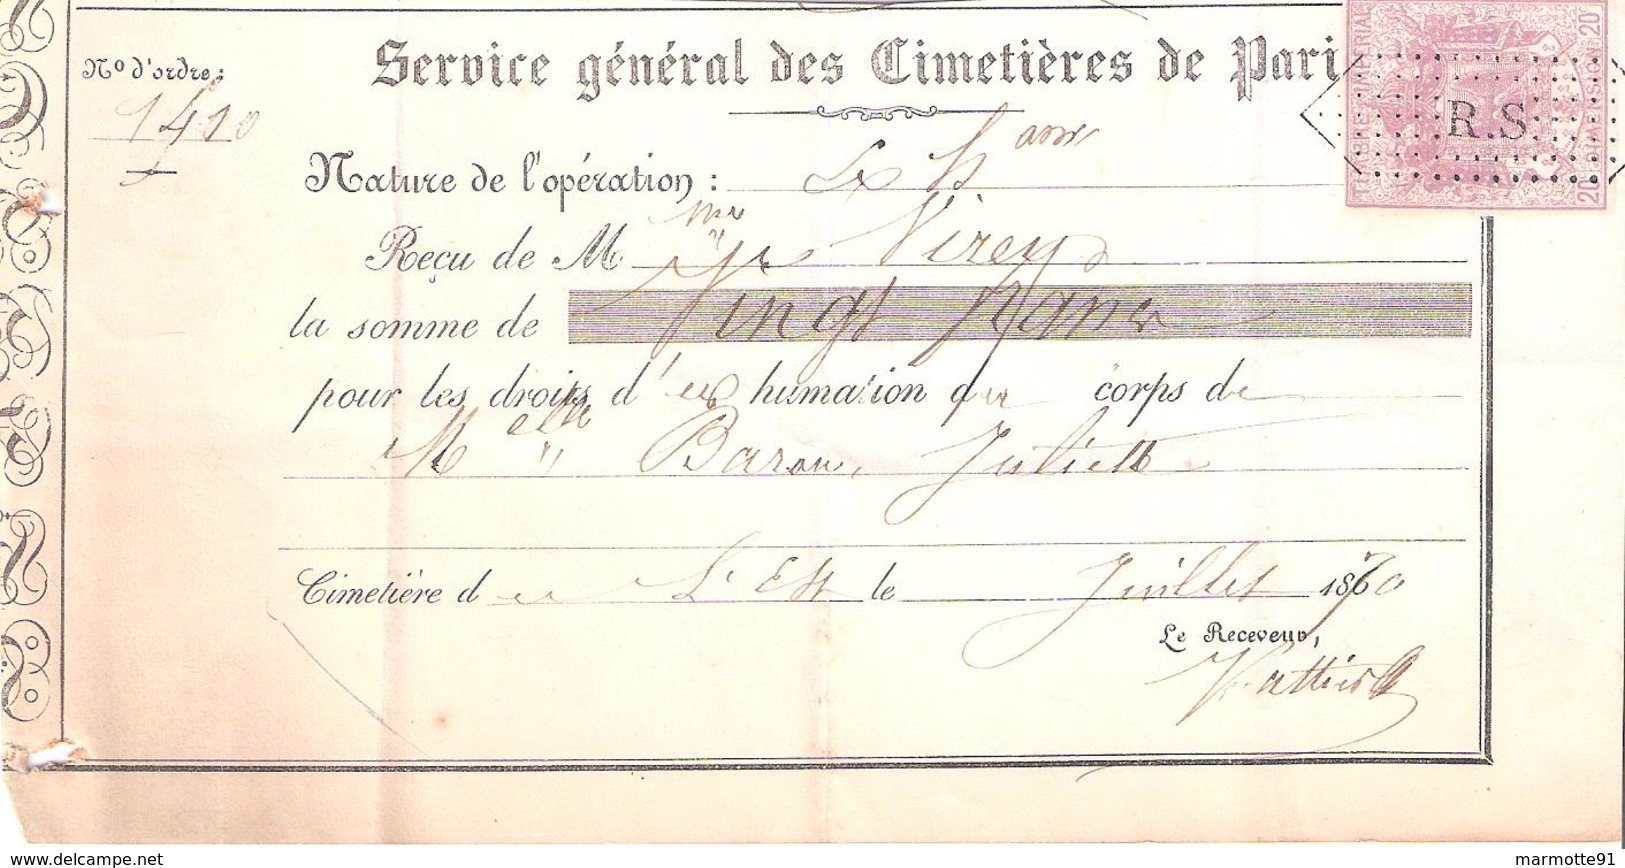 SERVICE GENERAL CIMETIERES DE PARIS 1870 TIMBRE FISCAL IMPERIAL 20C - 1800 – 1899